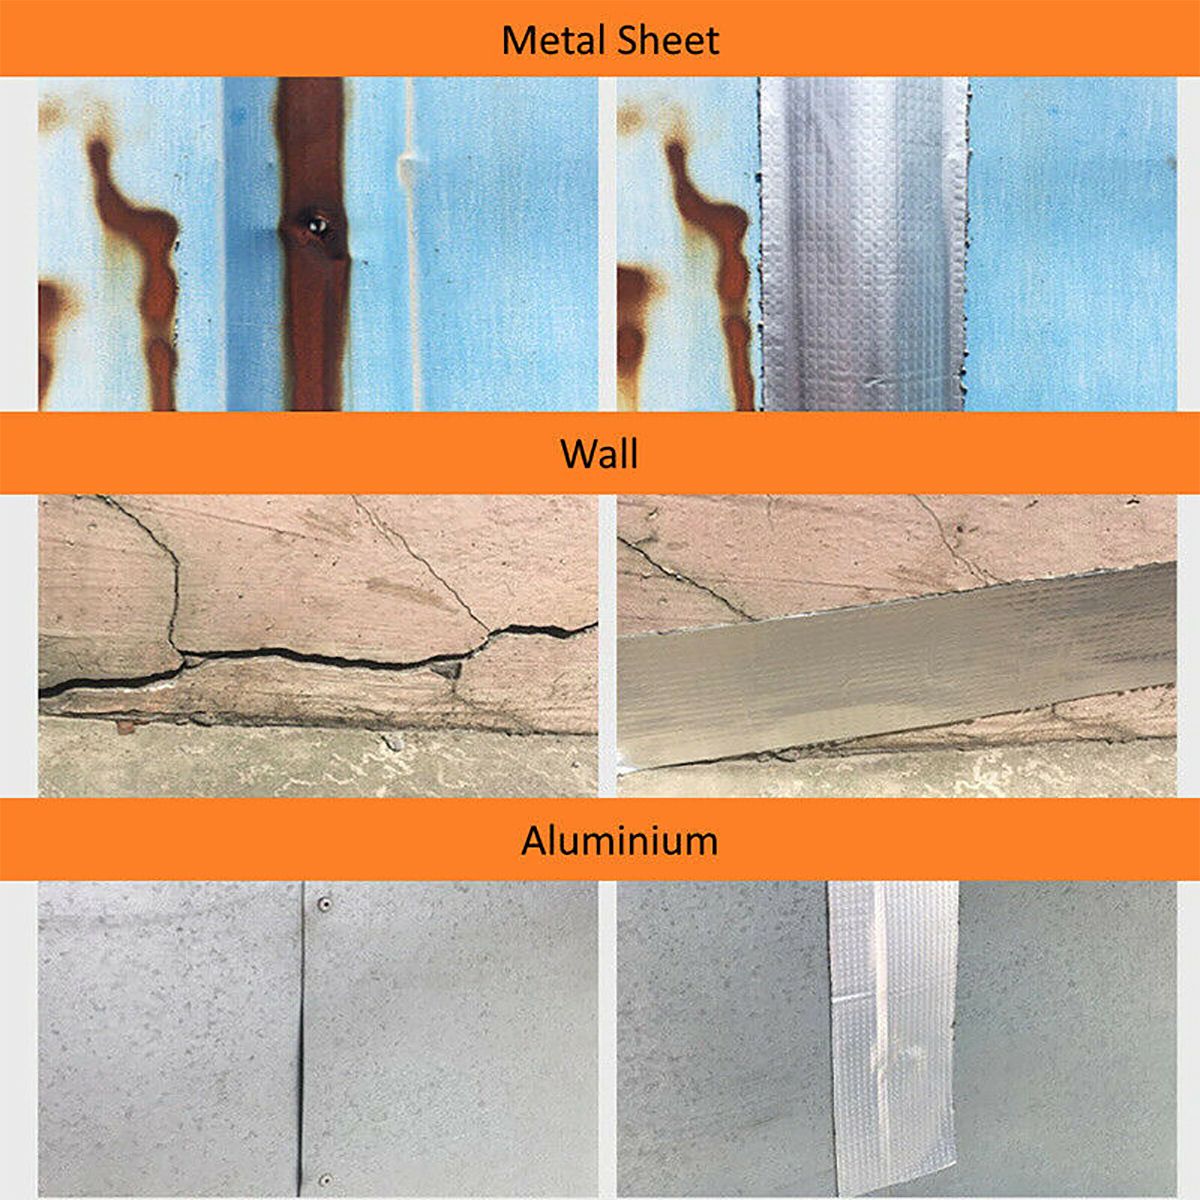 Aluminum-Foil-Butyl-Rubber-Tape-Self-Adhesive-Waterproof-Roof-Pipe-Marine-Repair-1592375